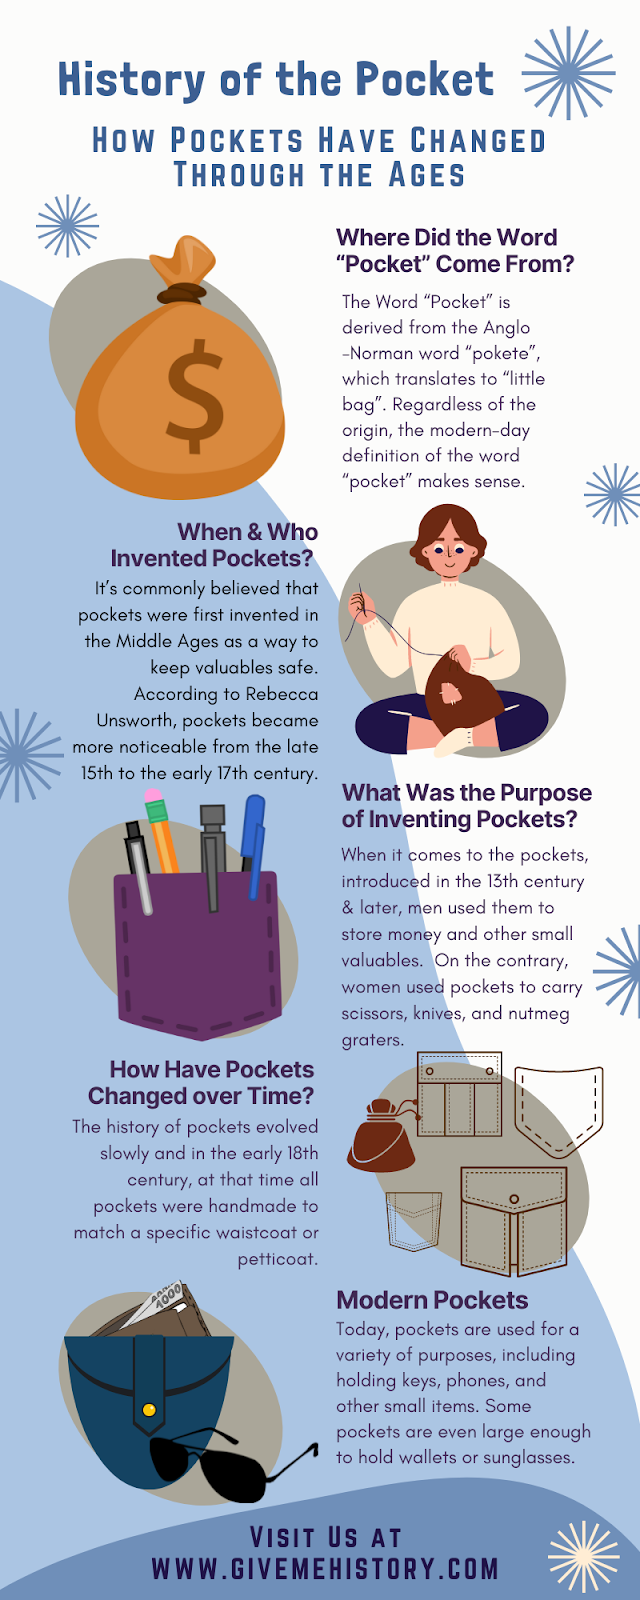 အိတ်ကပ်တွေကို ဘယ်သူက တီထွင်ခဲ့တာလဲ။ Pocket ၏သမိုင်း